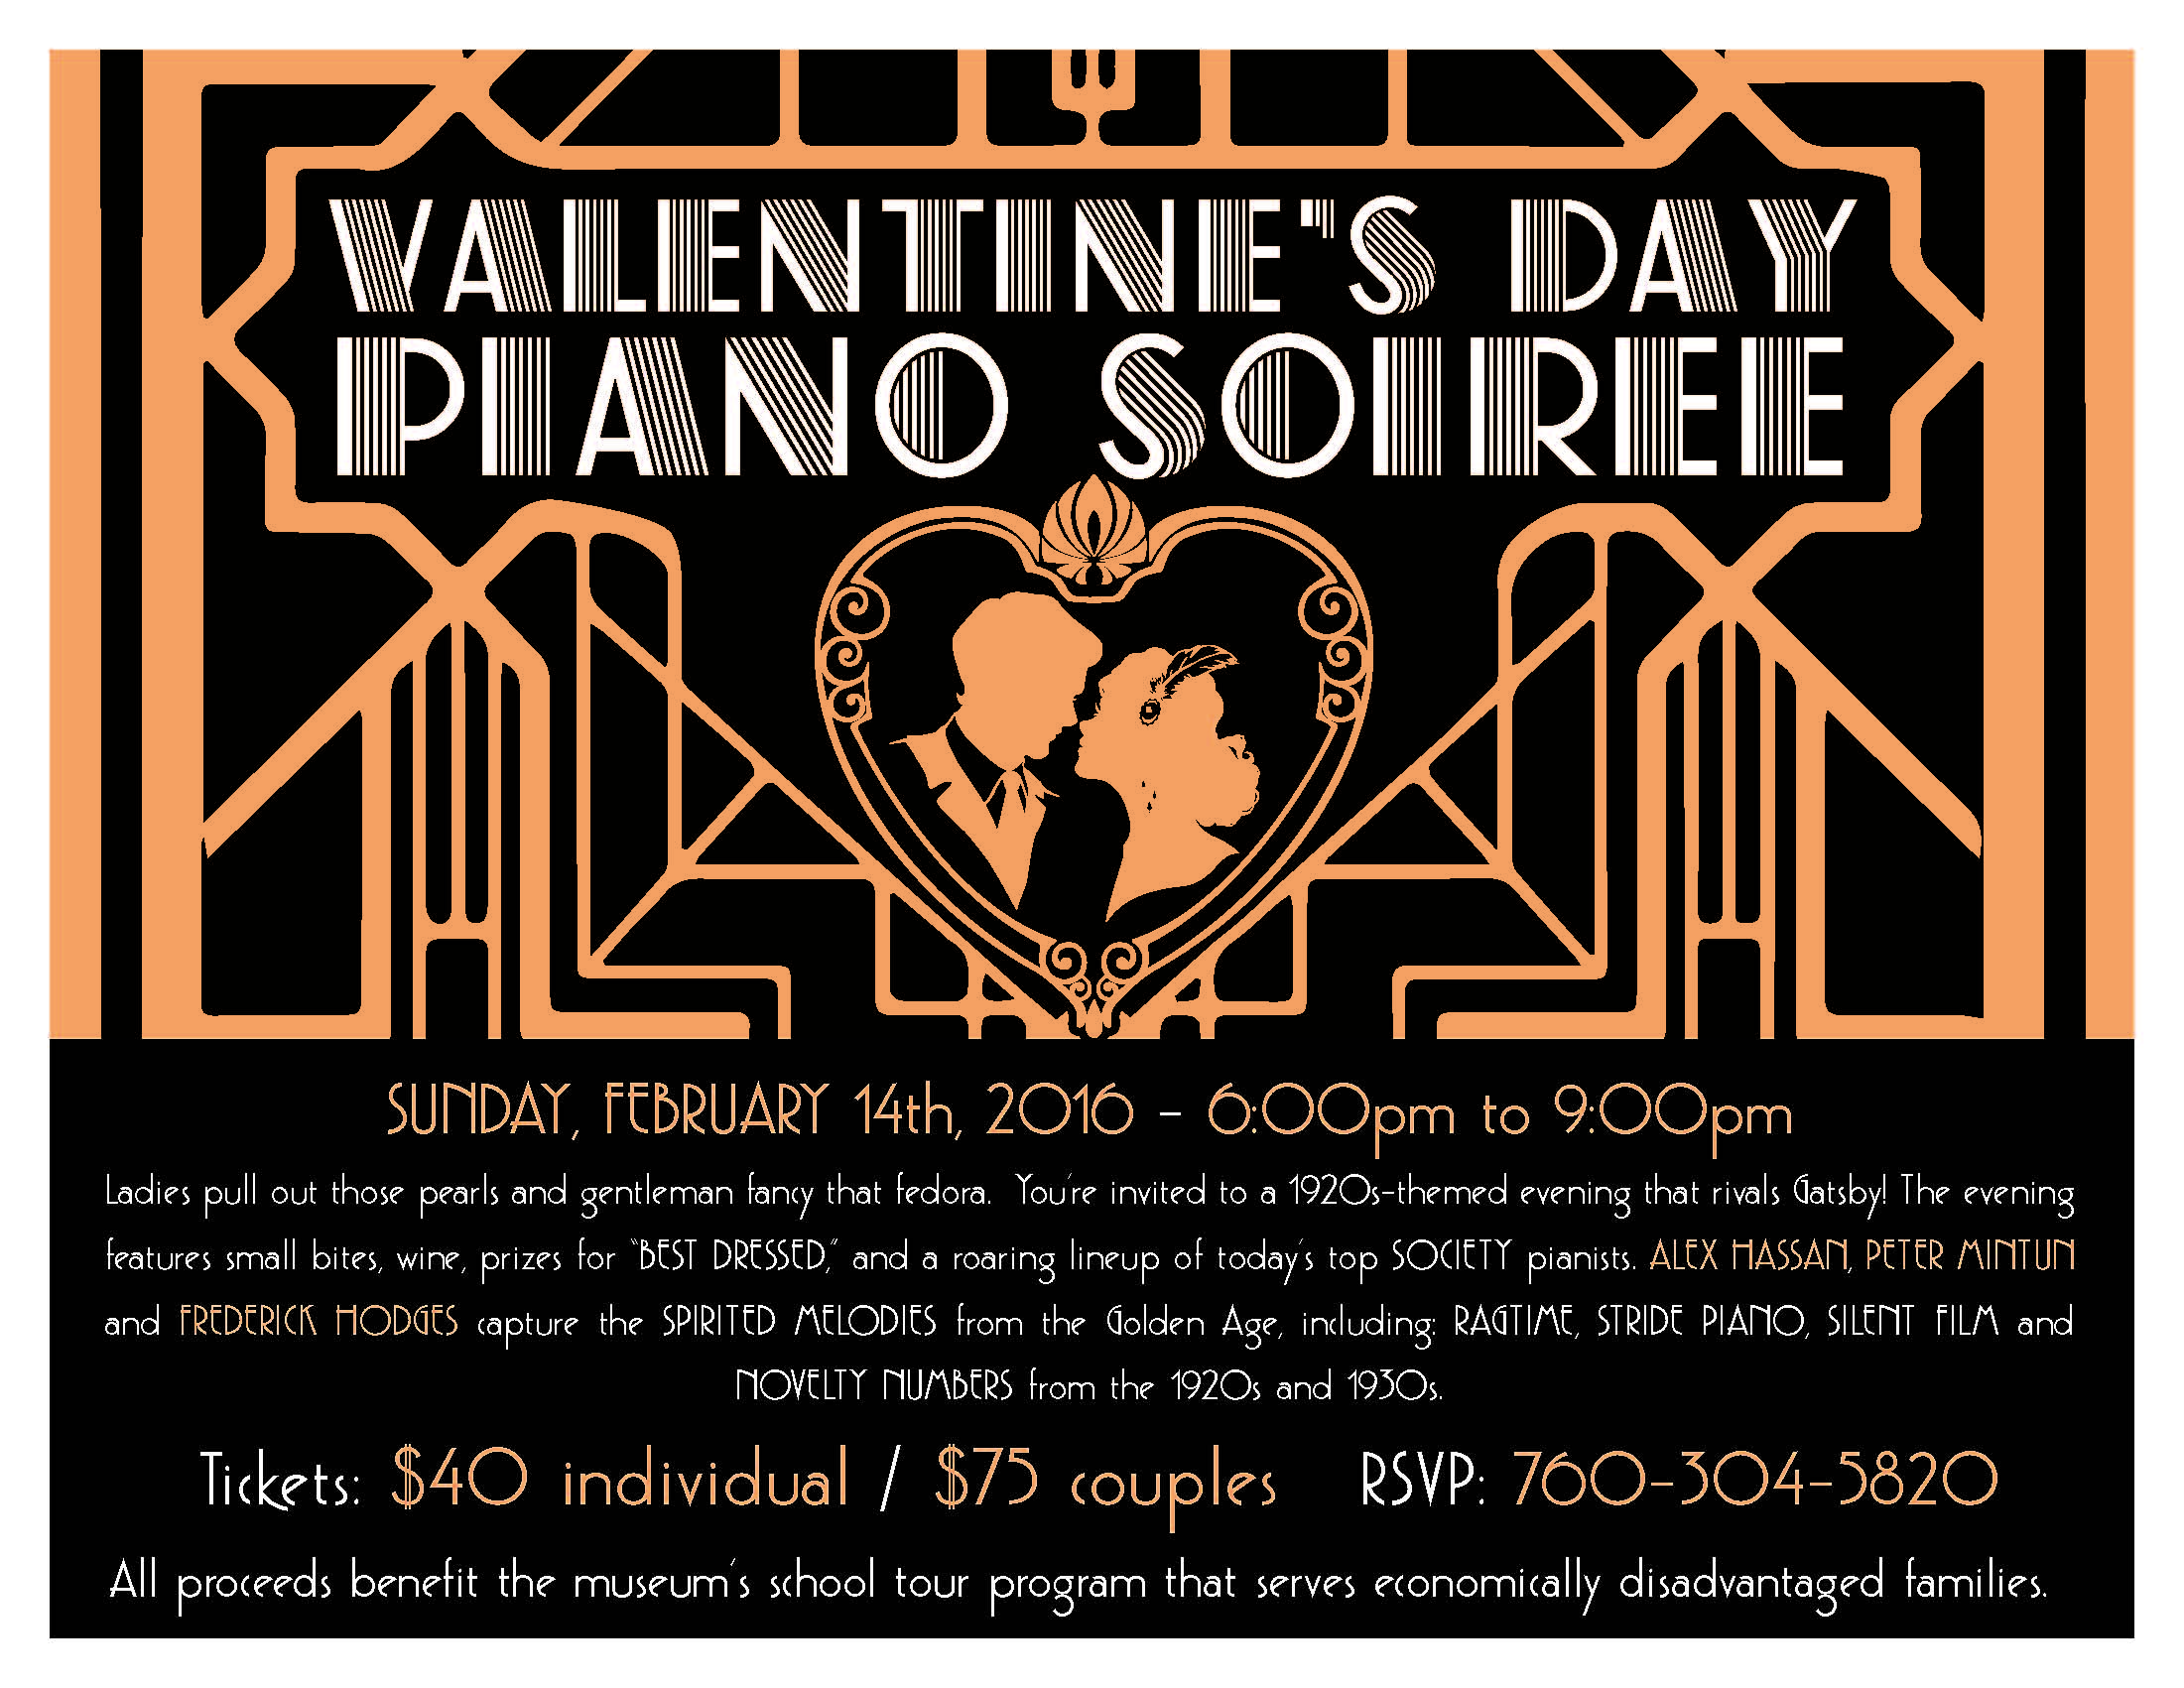 Valentine's Day Piano Soiree